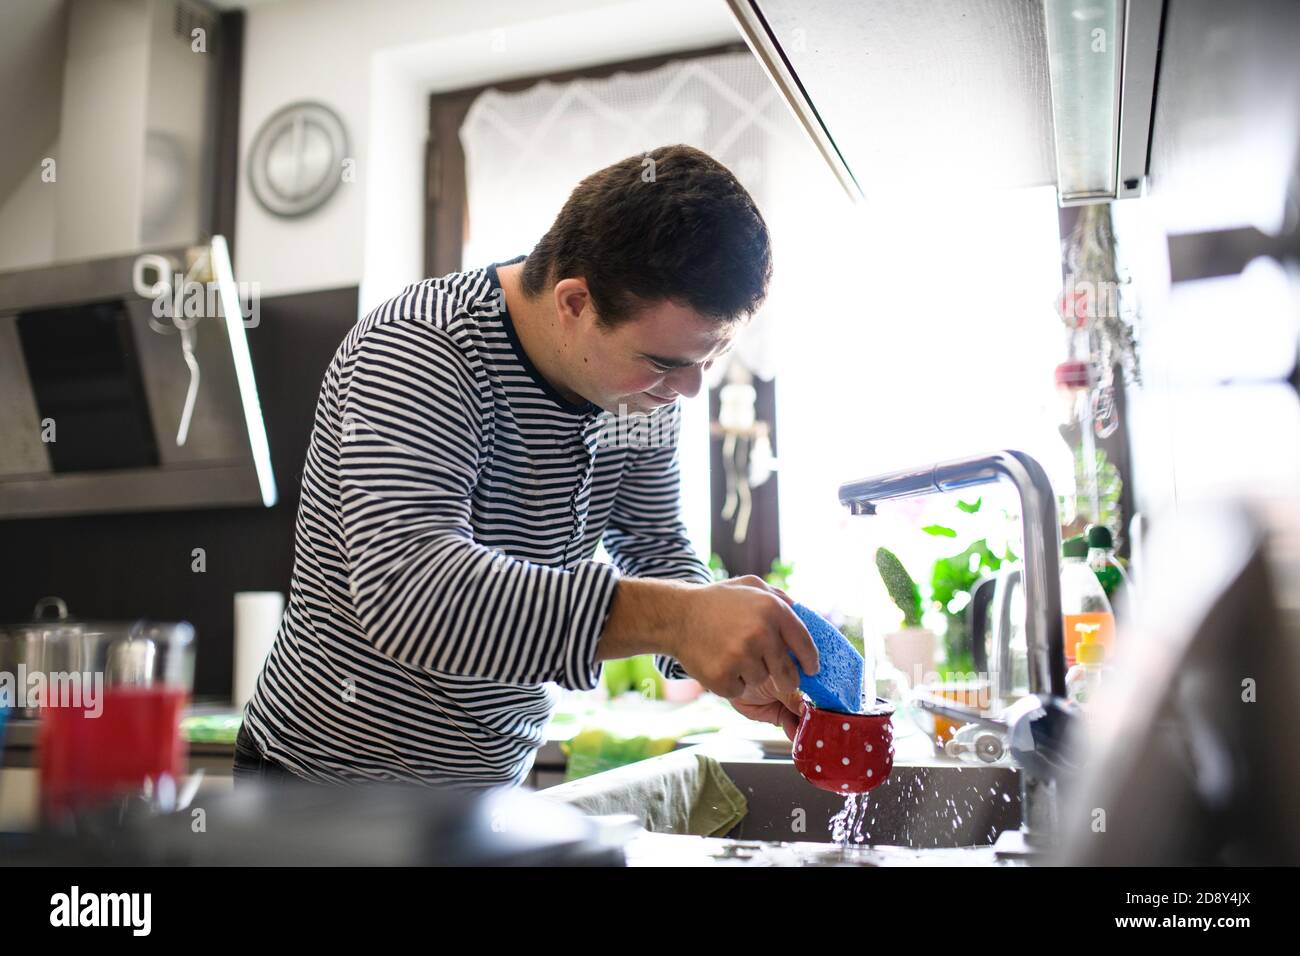 Syndrome de Down homme adulte debout à l'intérieur dans la cuisine à la maison, laver la vaisselle. Banque D'Images